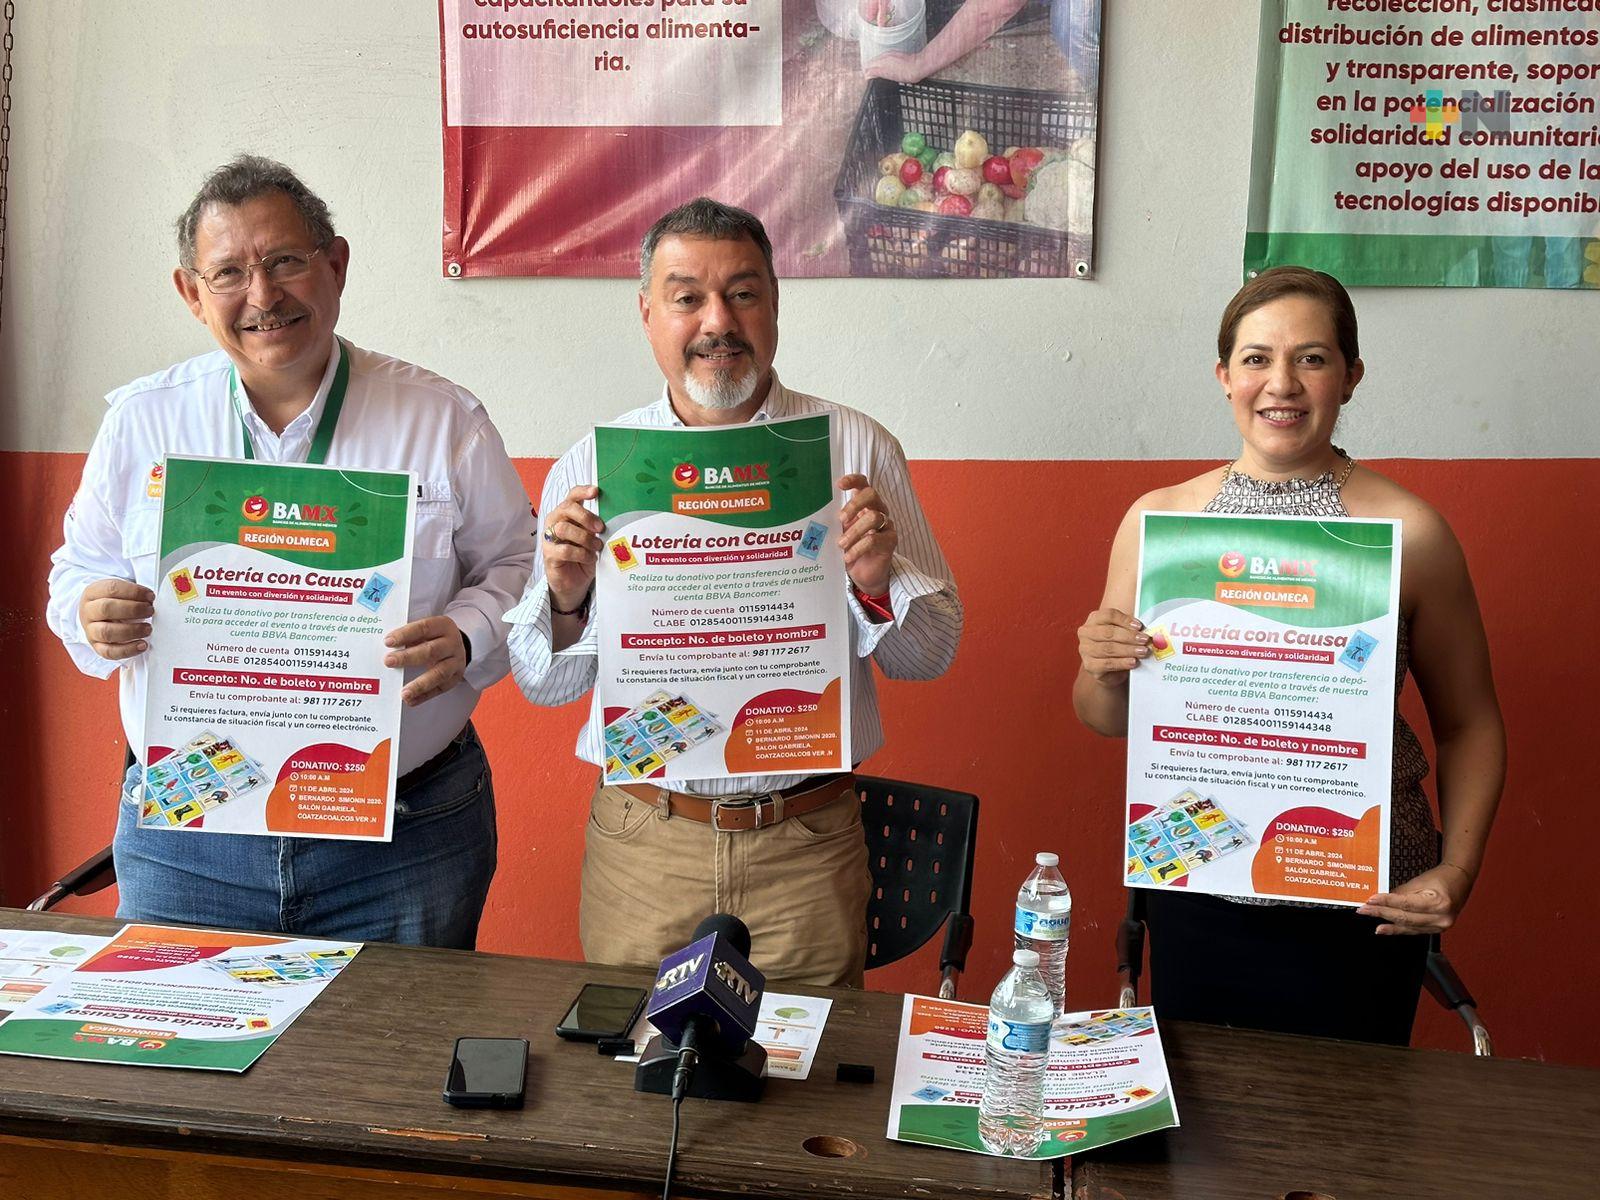 Banco de Alimentos de la región Olmeca organiza lotería con causa